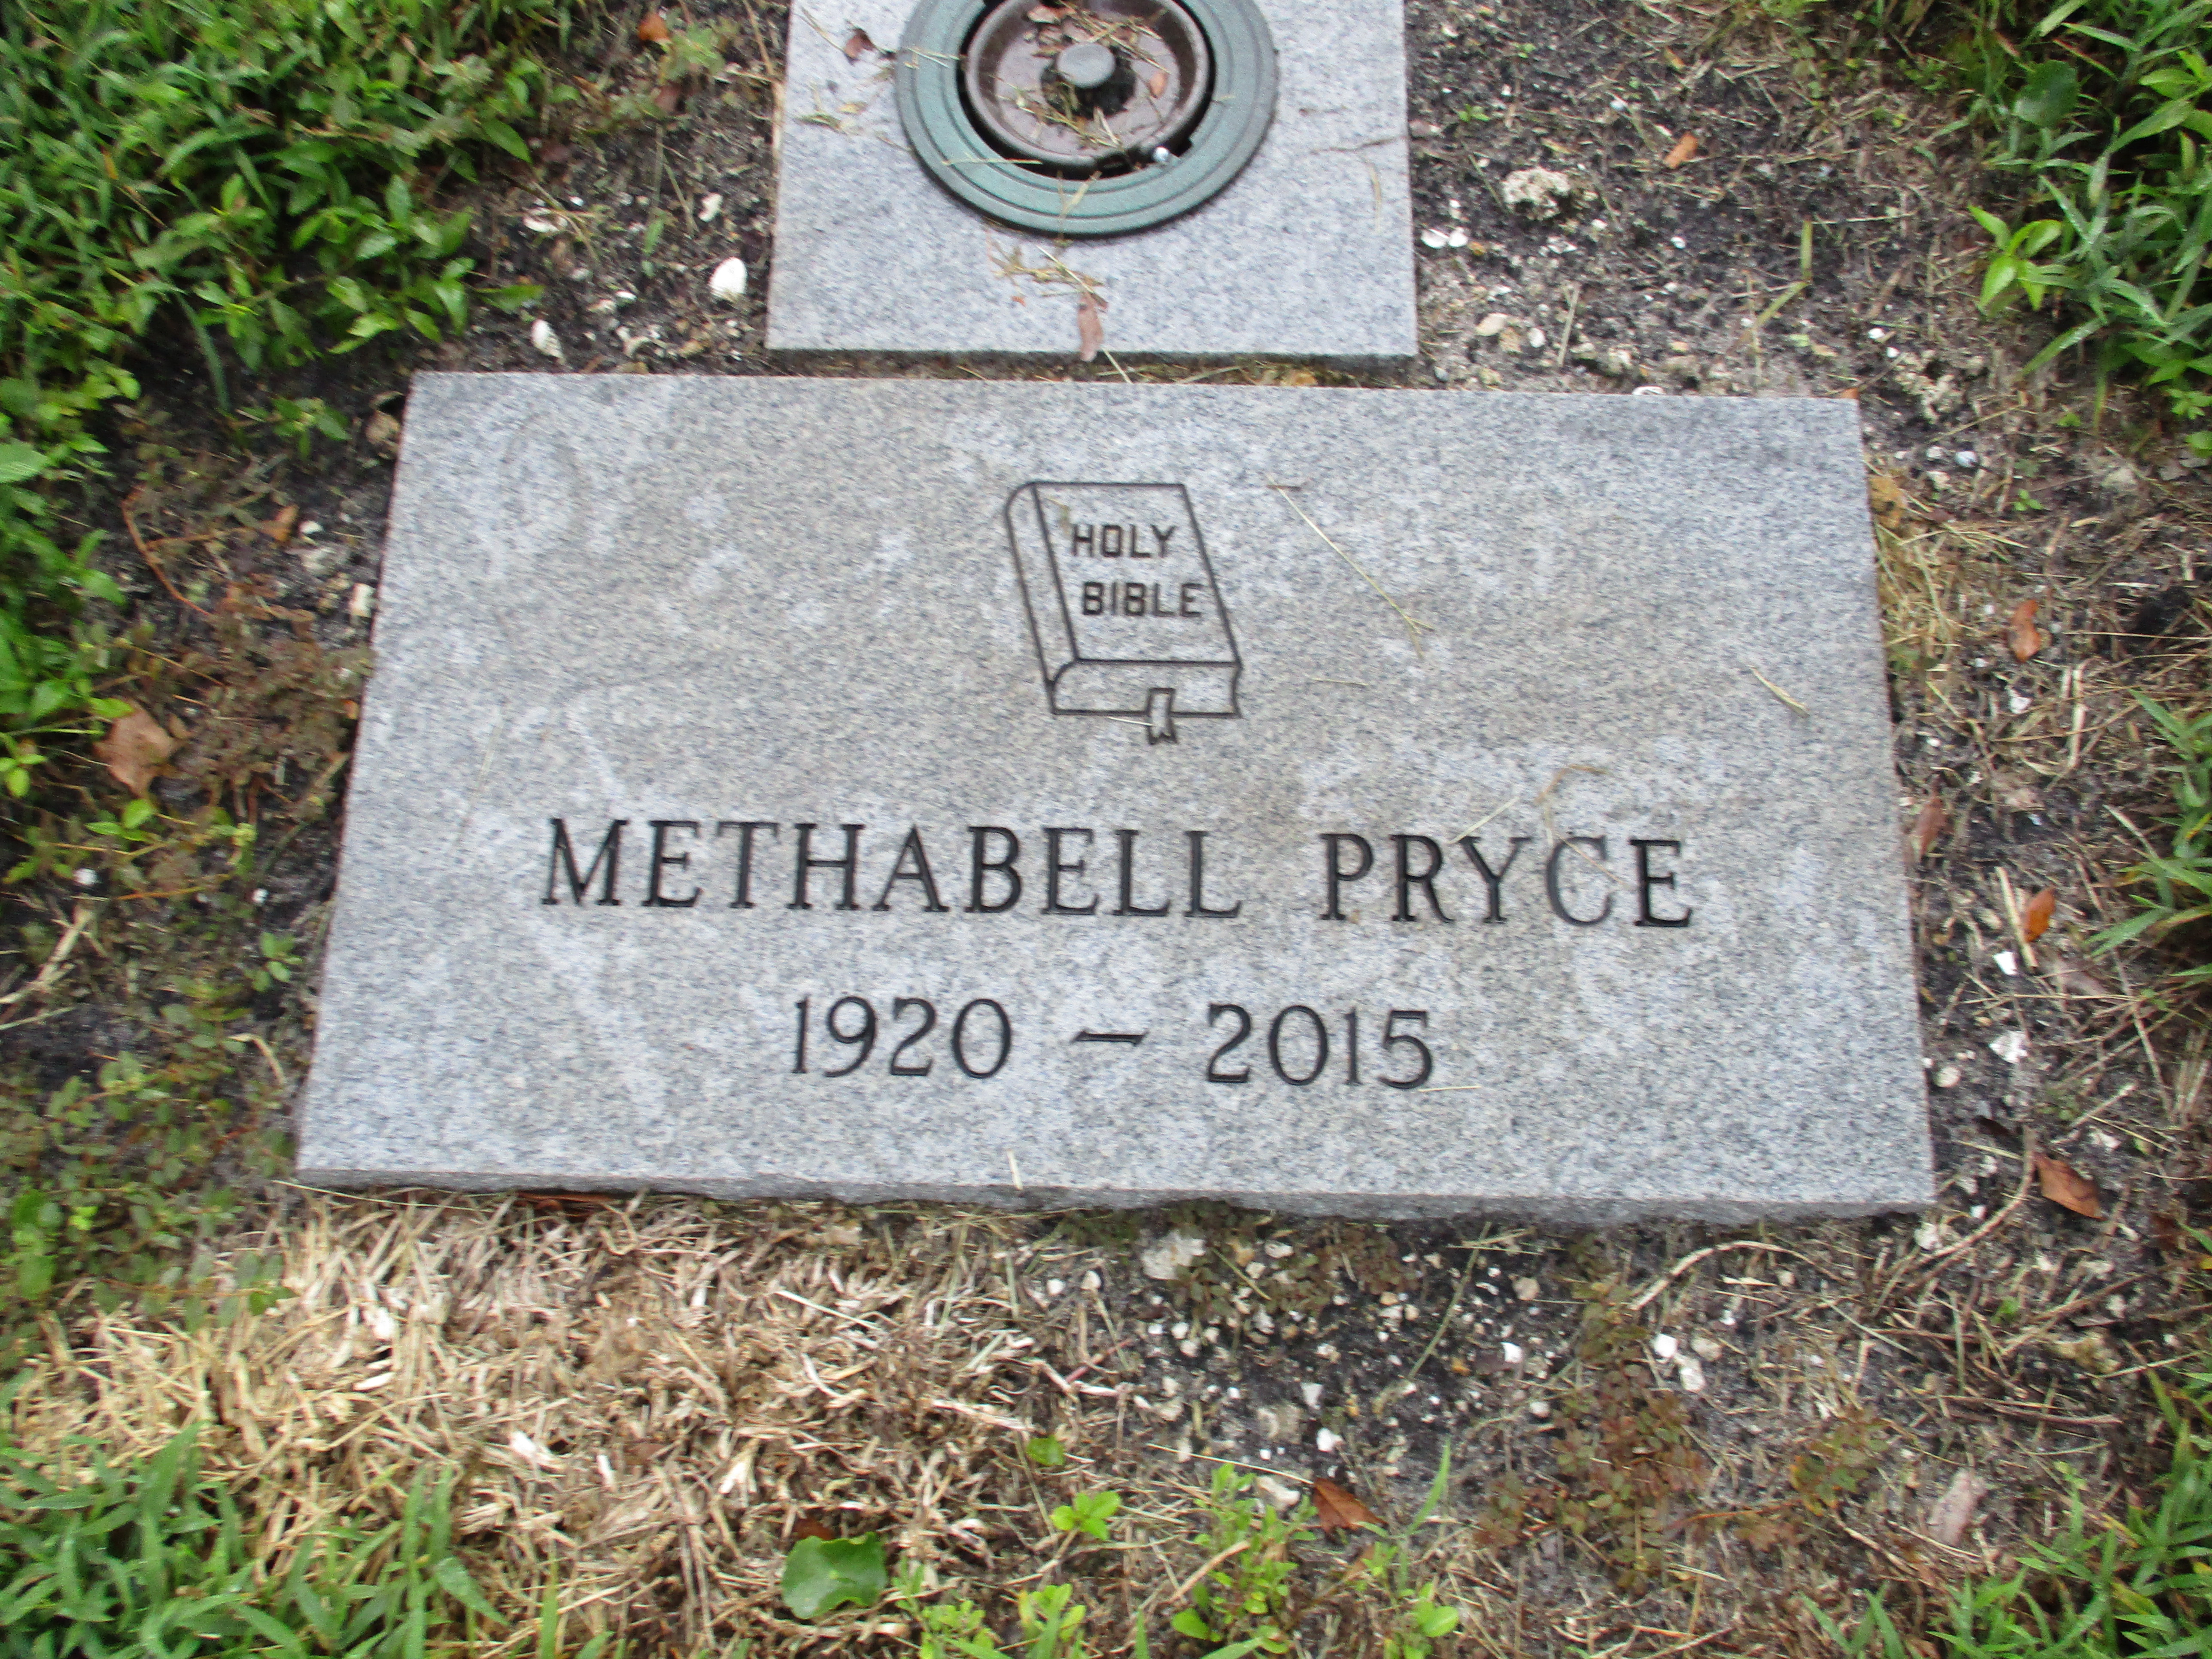 Methabell Pryce